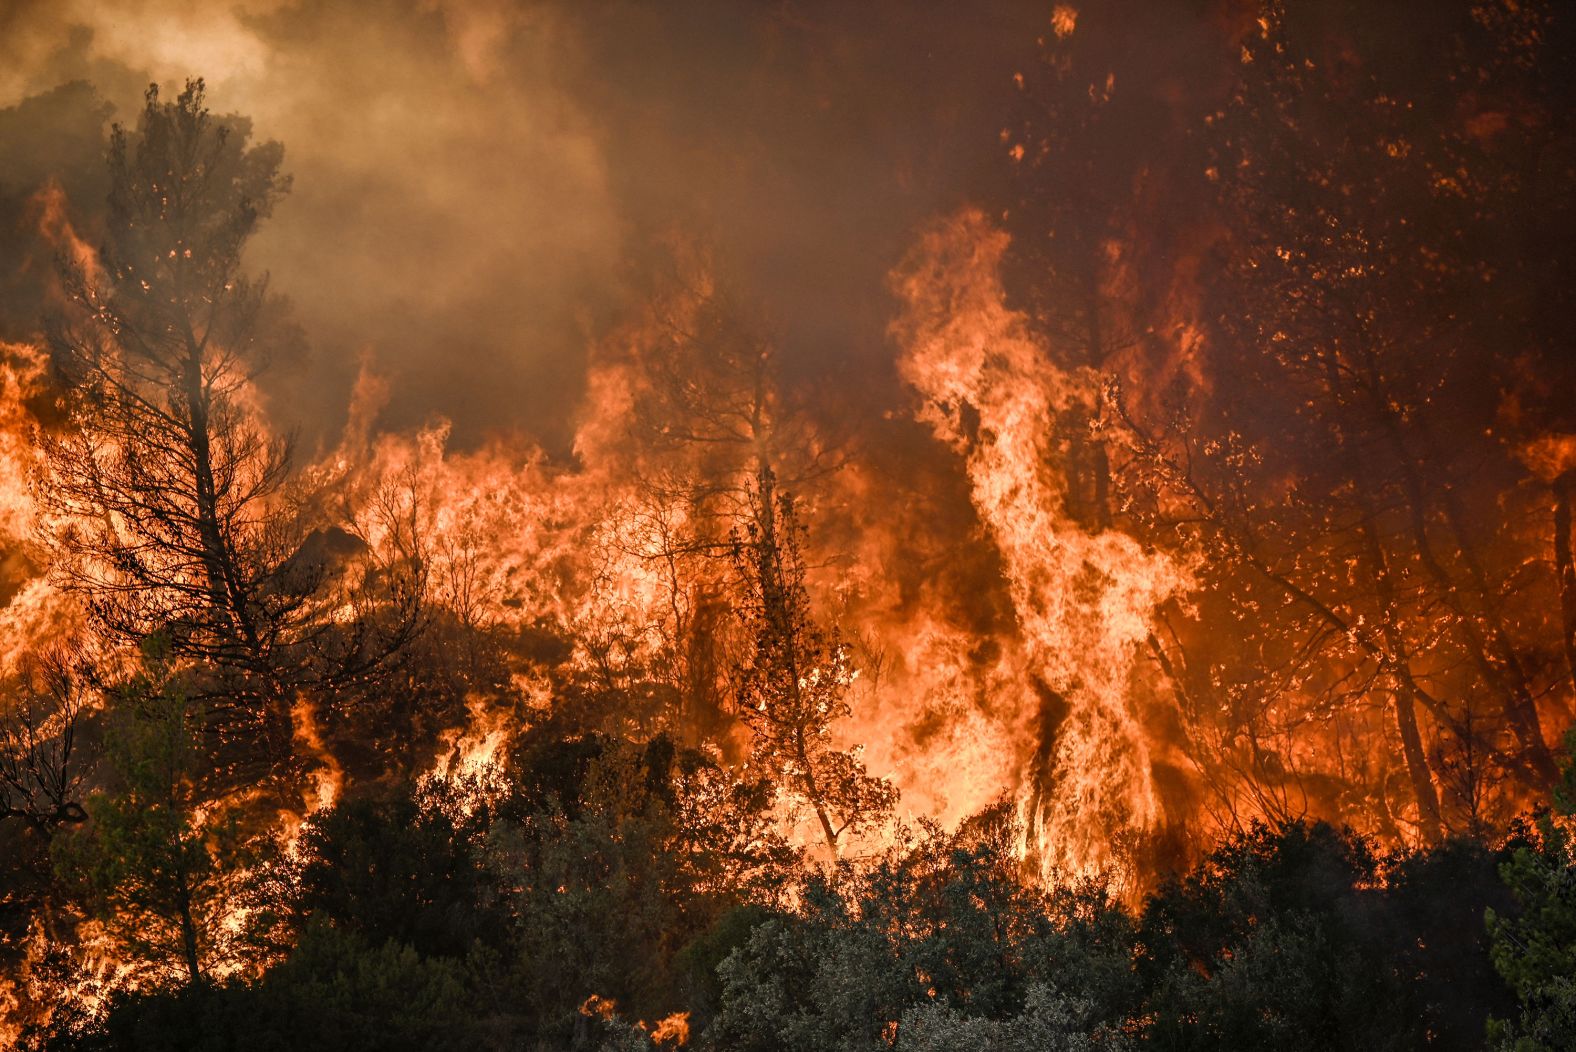 Vegetation burns near Prodromos on August 21.